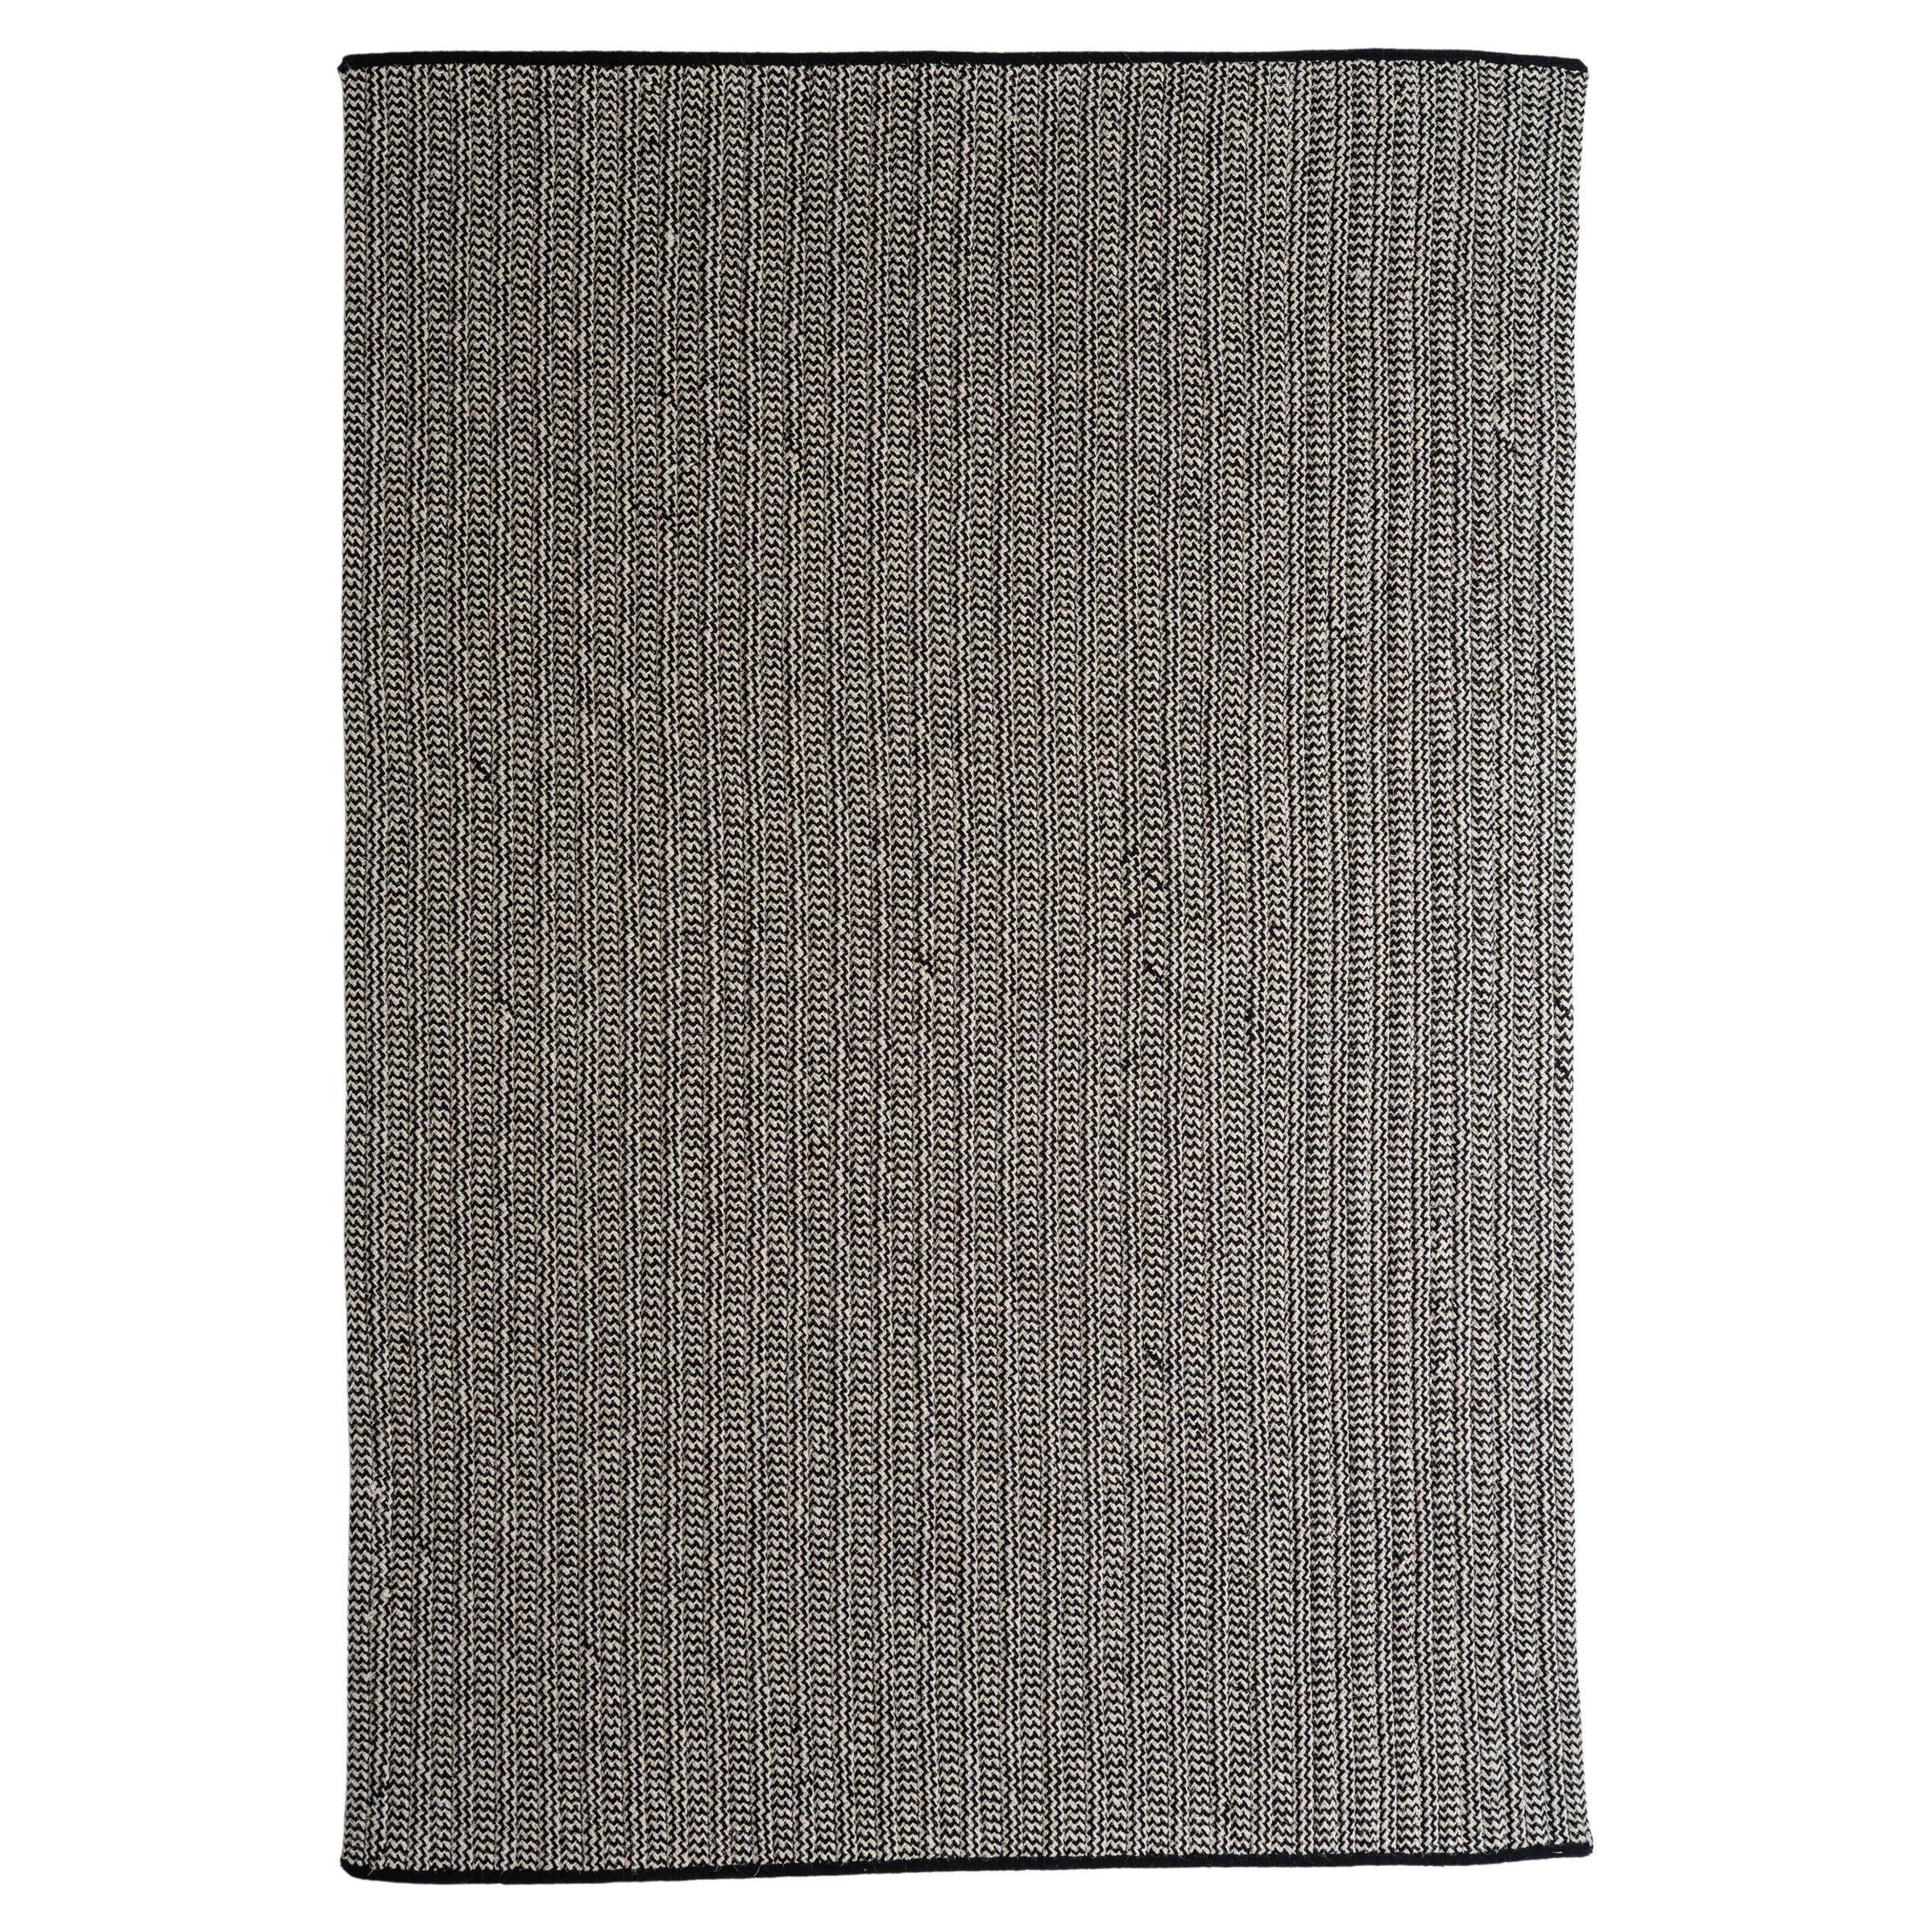 Franco-Teppich aus natürlicher Wolle, schwarzer und grauer Mischung, Thayer Design Studio 